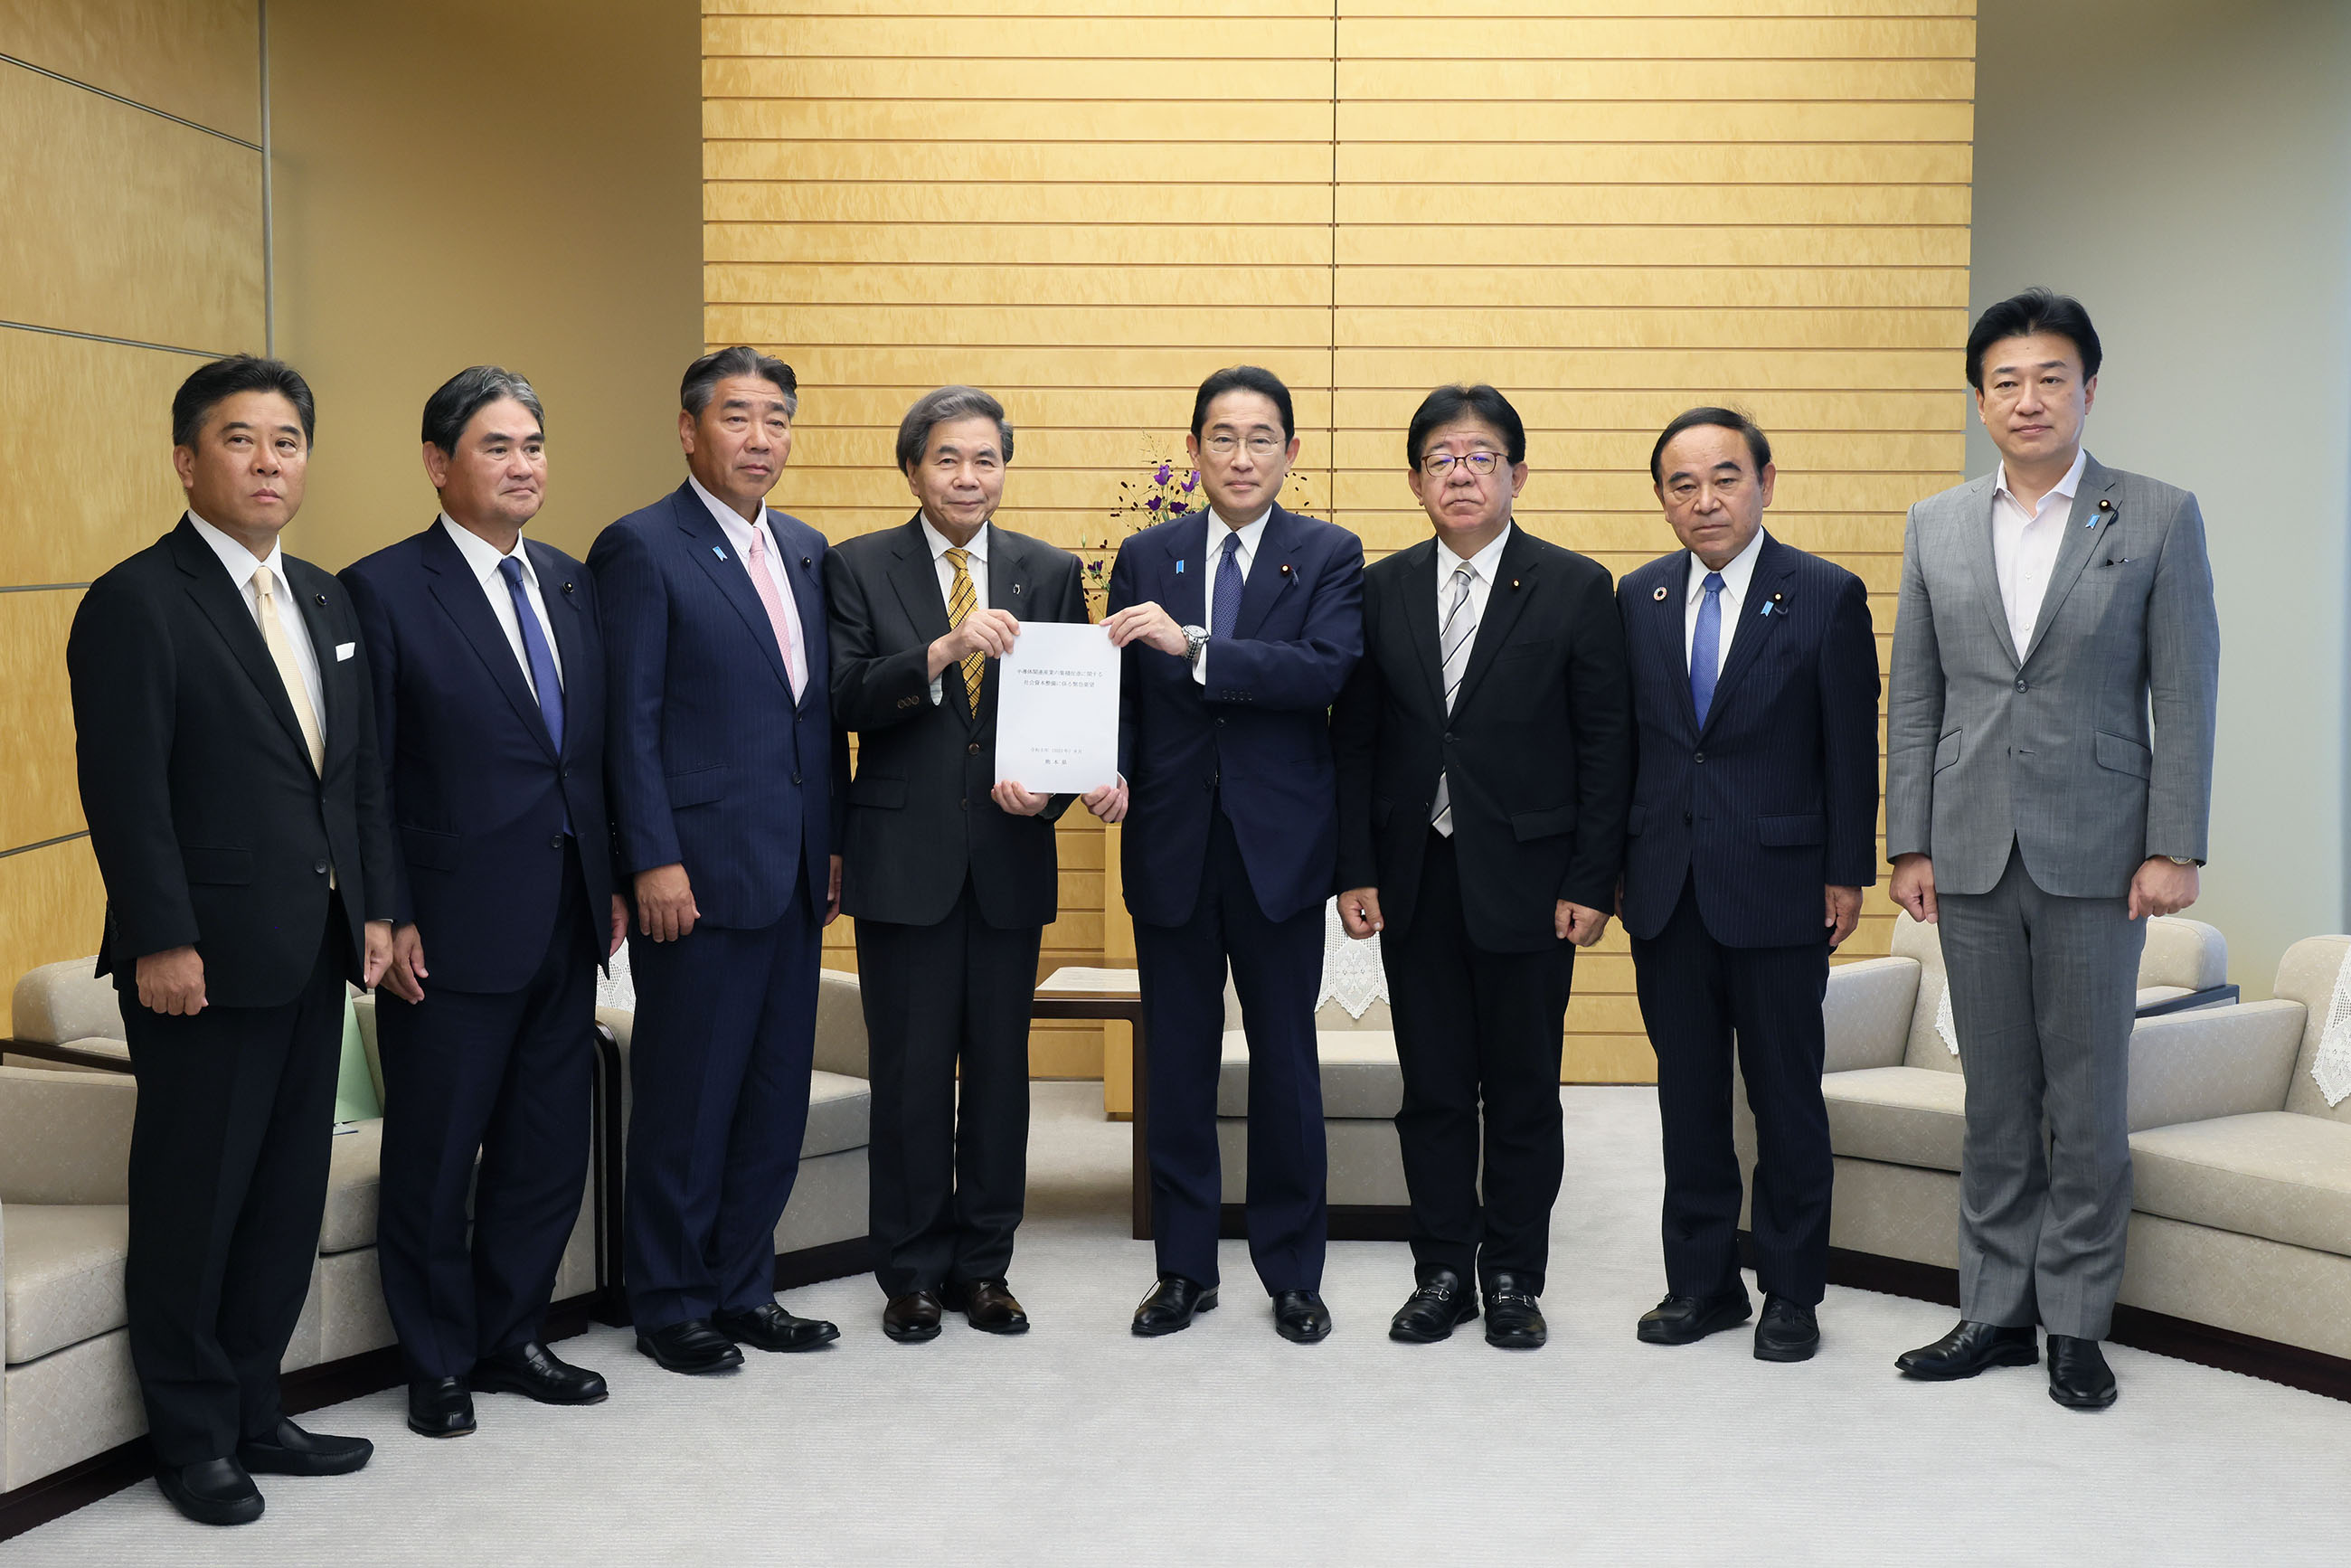 Prime Minister Kishida holding a meeting (1)